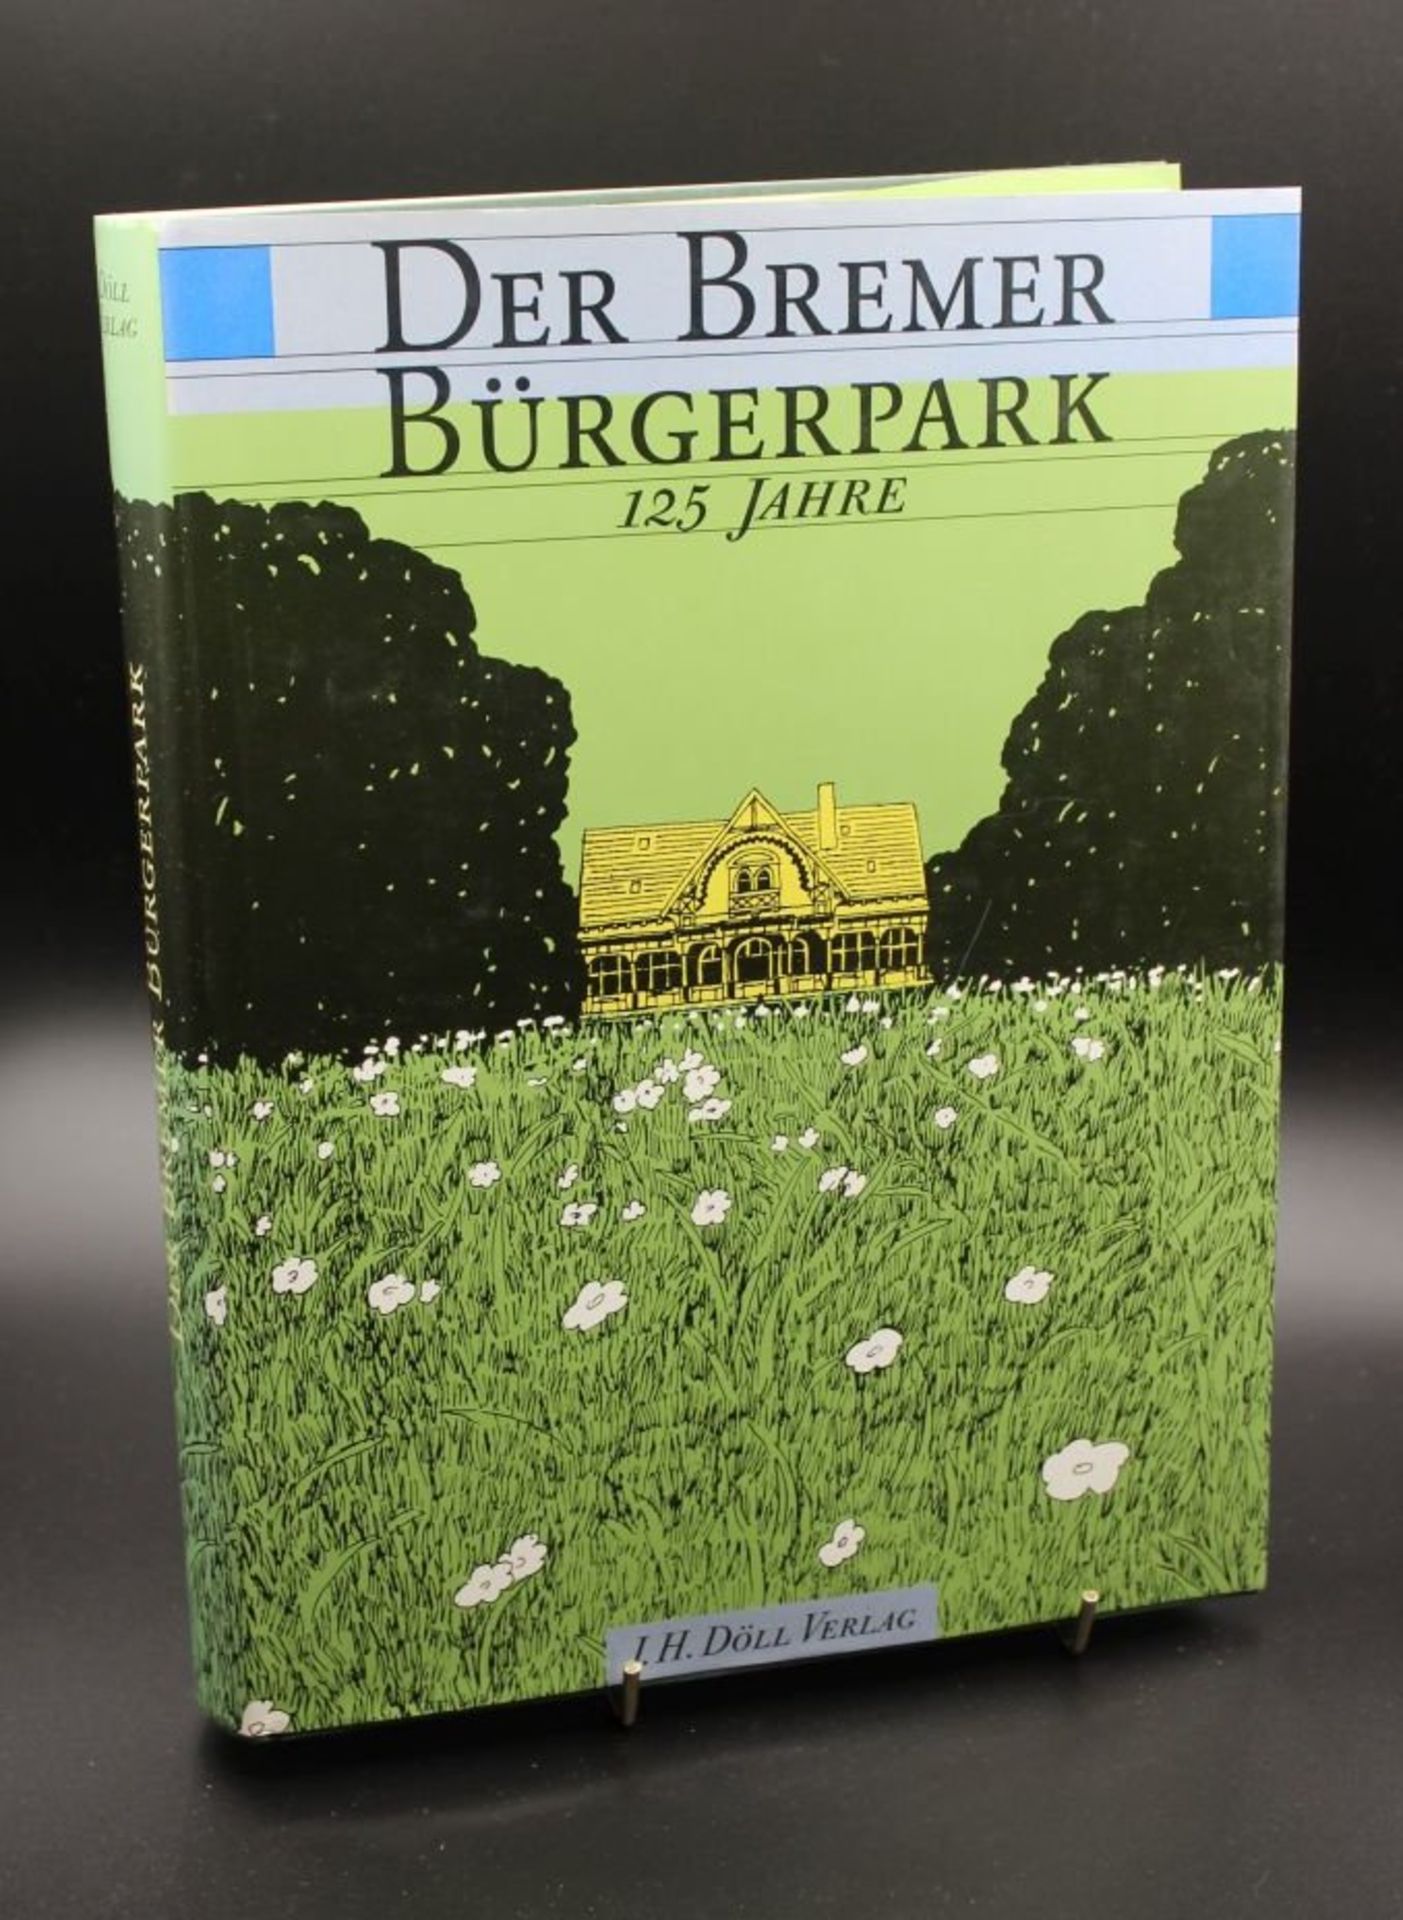 Der Bremer Bürgerpark, 125 Jahre, 1991.